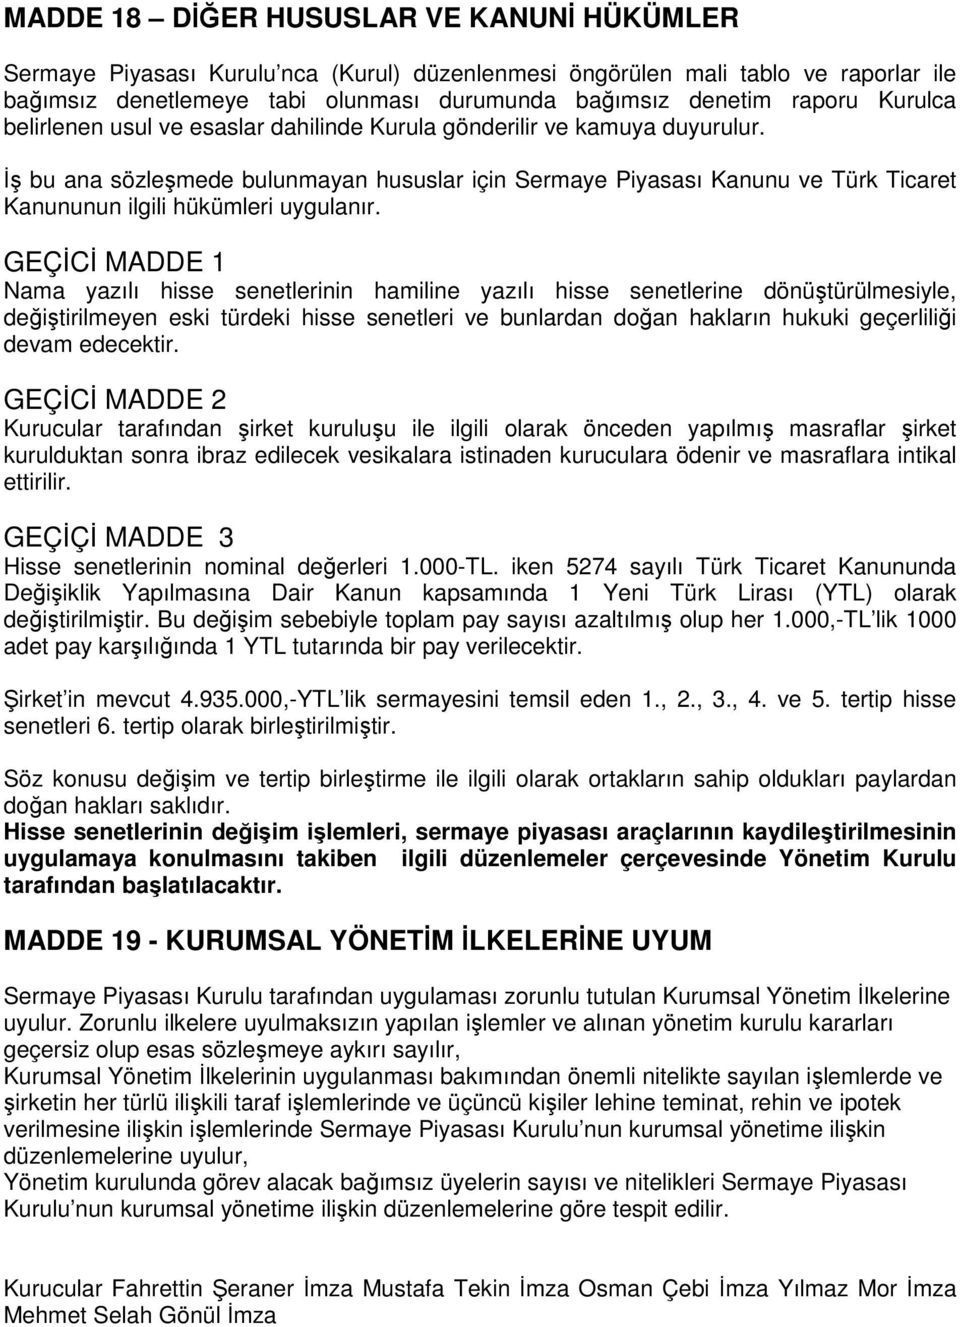 İş bu ana sözleşmede bulunmayan hususlar için Sermaye Piyasası Kanunu ve Türk Ticaret Kanununun ilgili hükümleri uygulanır.